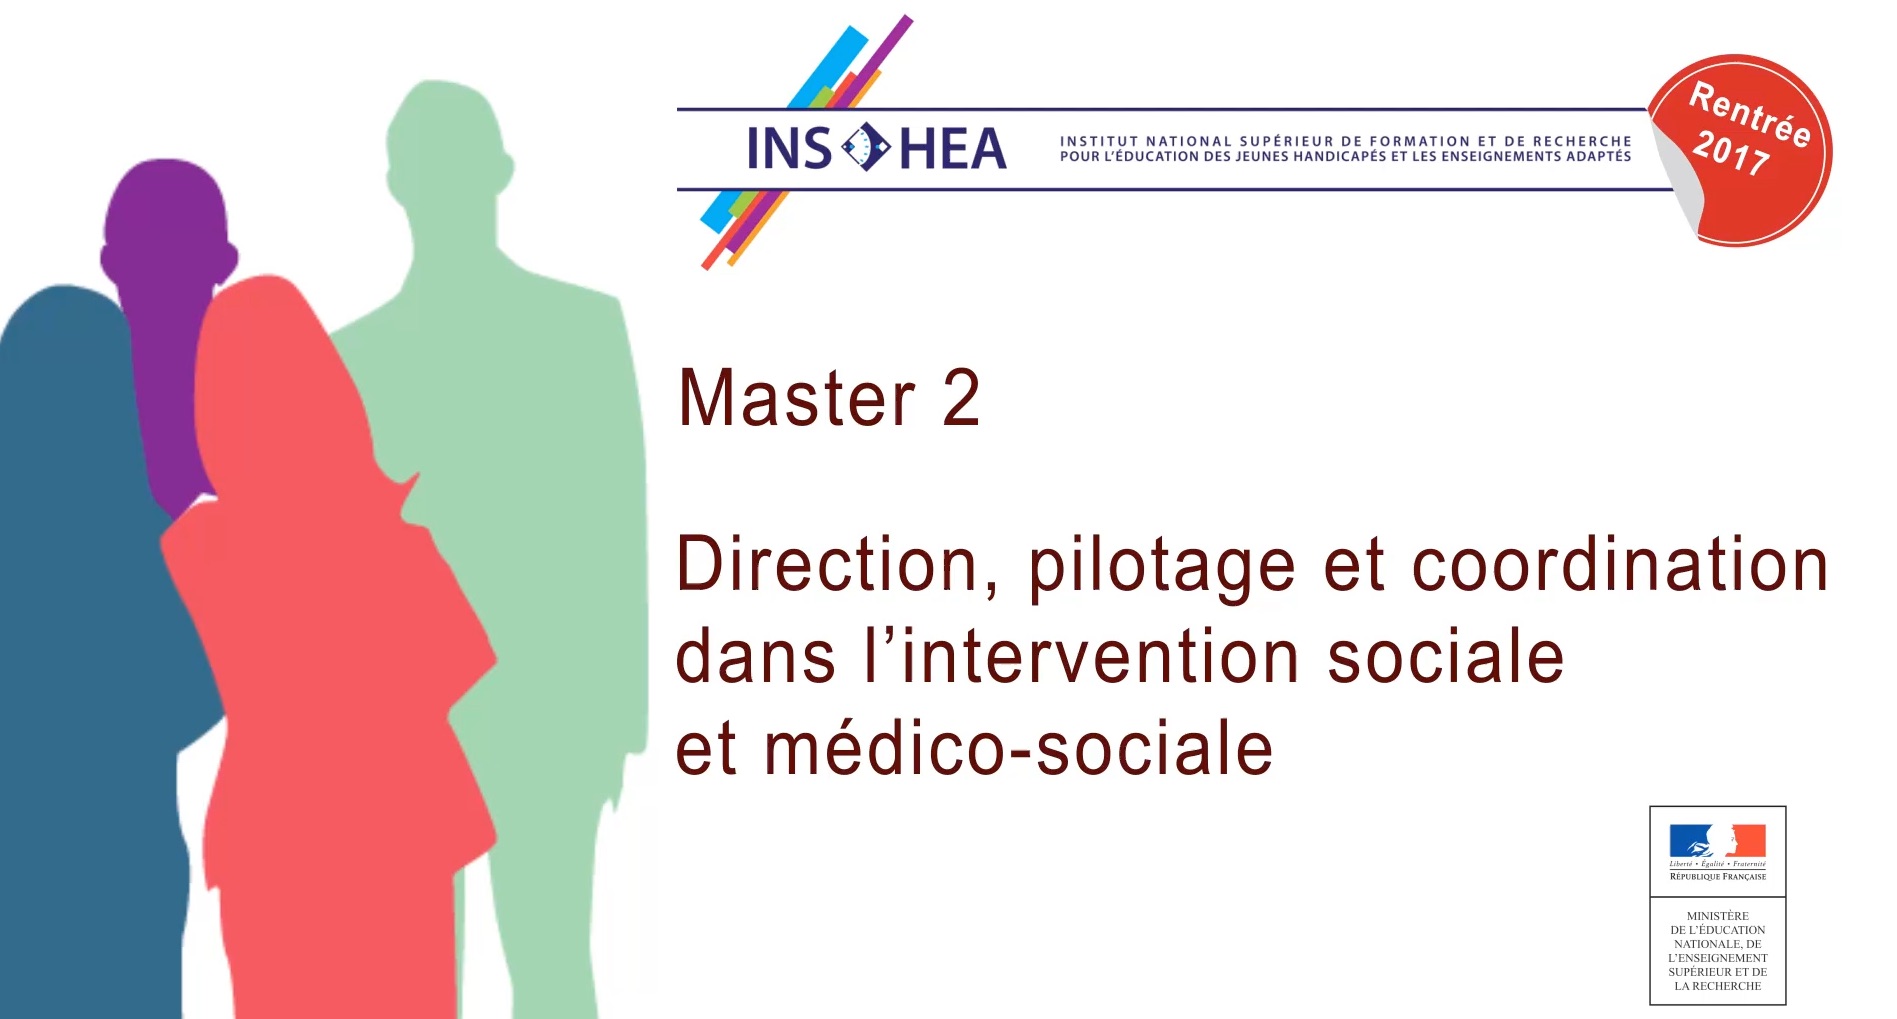 Master 2 - Direction, pilotage et coordination dans l'intervention sociale et médico-sociale